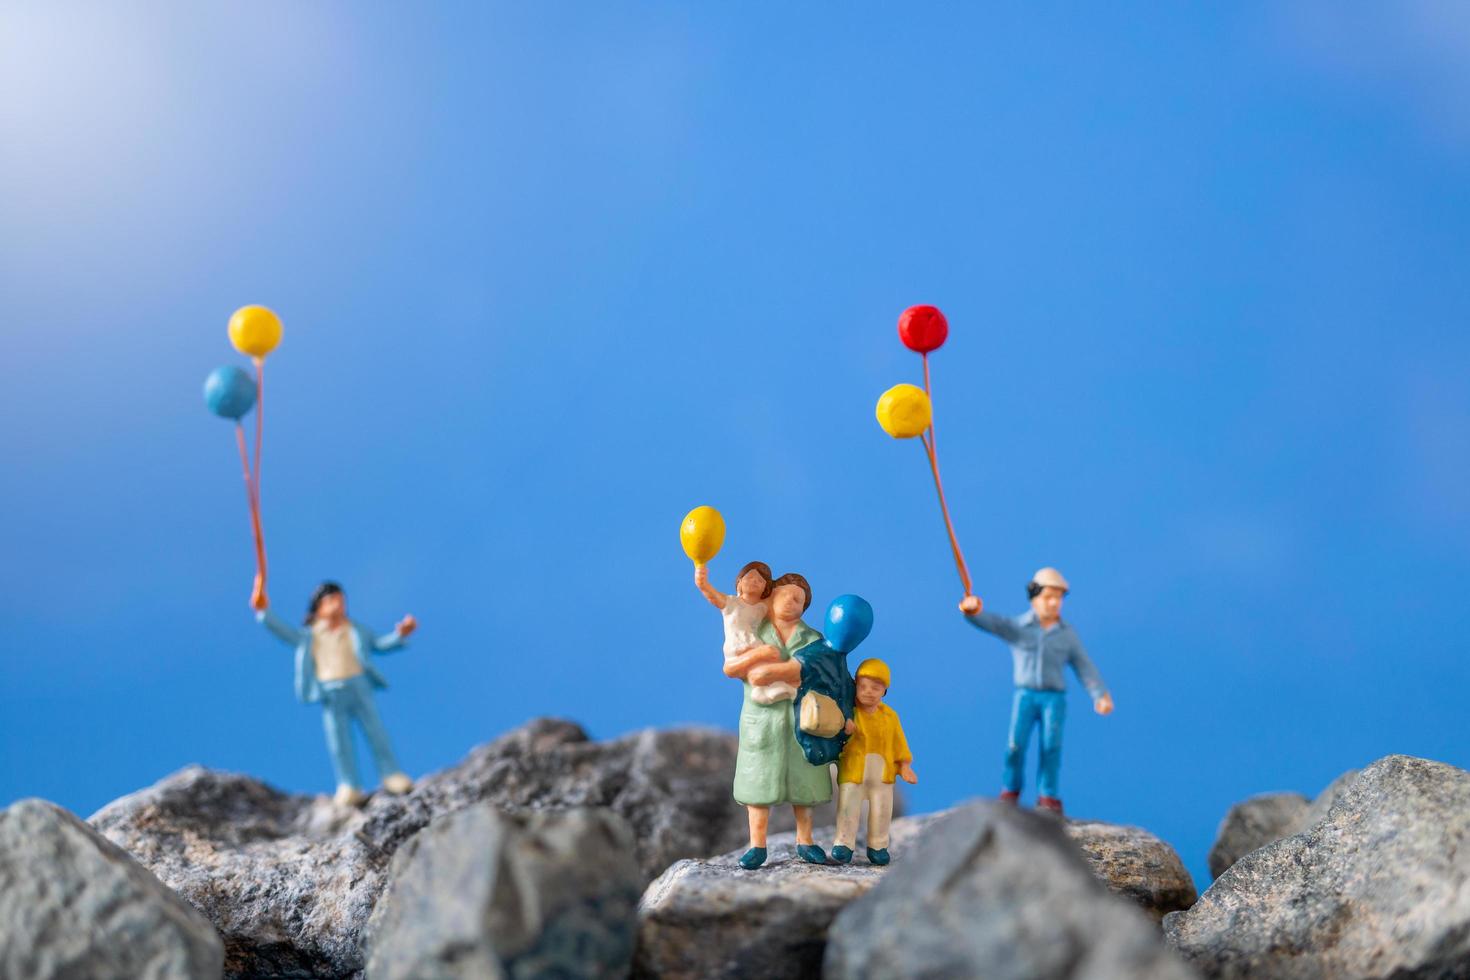 Miniaturfamilie, die Luftballons auf einem Felsen mit einem blauen Himmelhintergrund hält foto